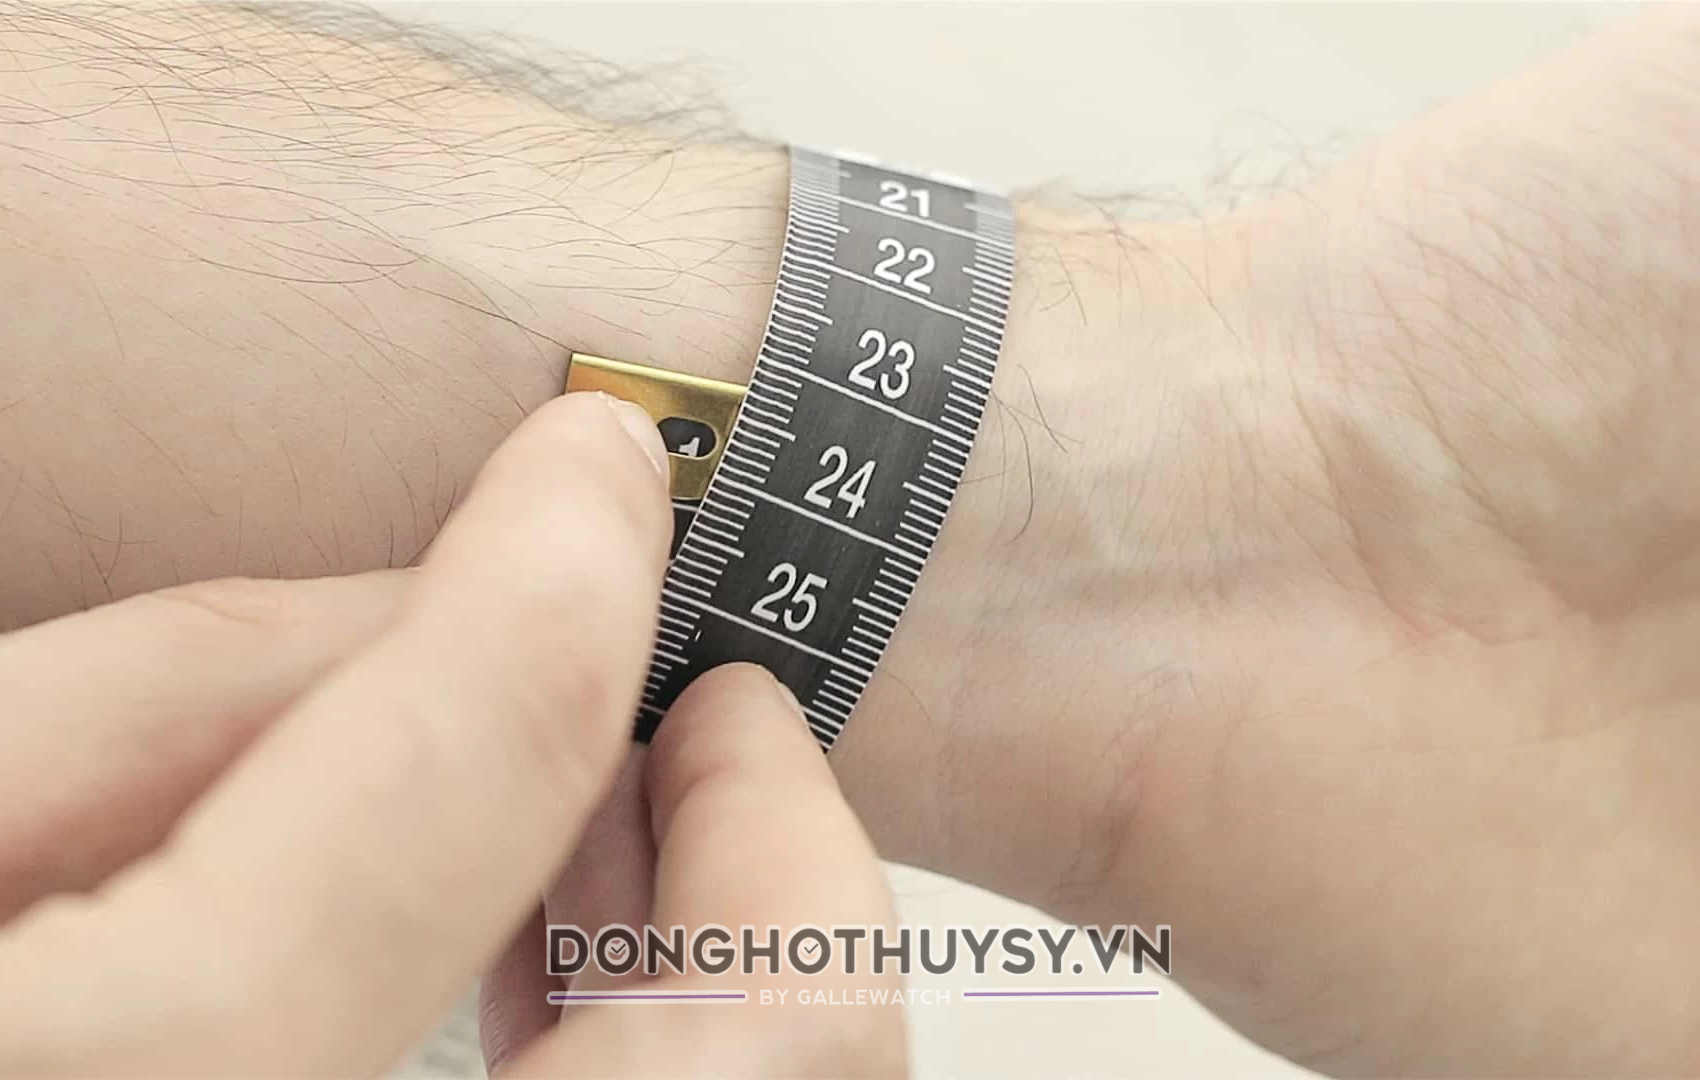 Đo chu vi cổ tay để chọn đồng hồ nam size 40 chính xác nhất